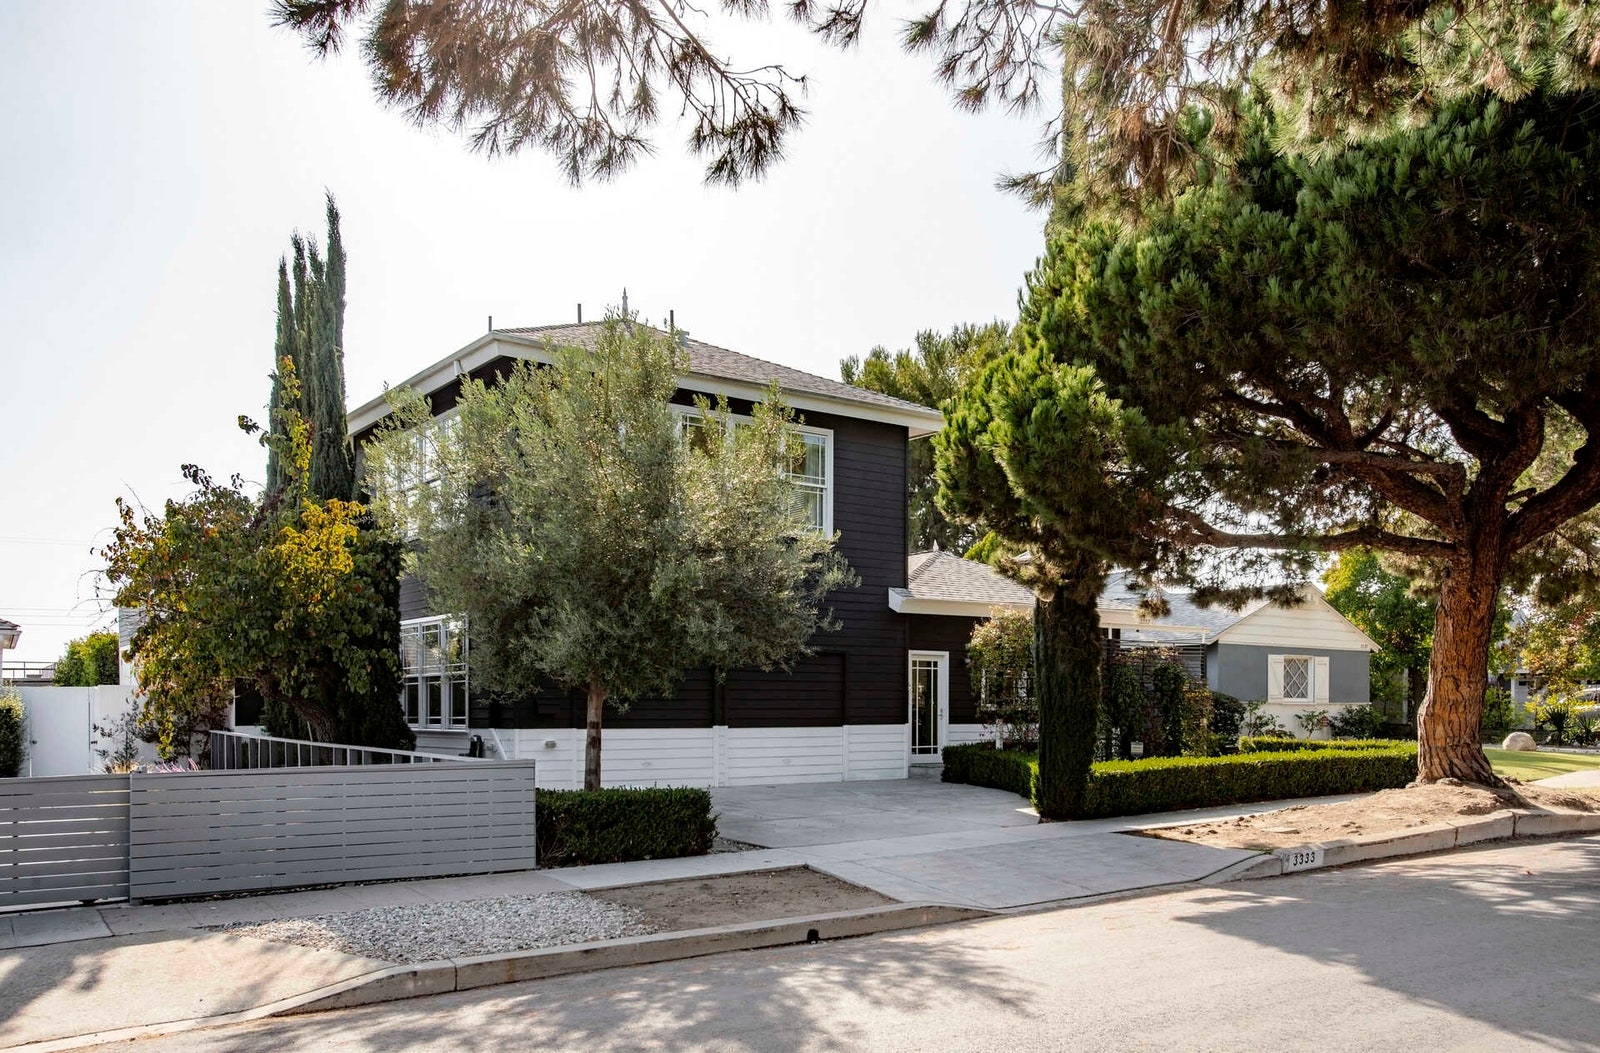 Дом дизайнера Филиппа Старка в ЛосАнджелесе выставлен на продажу